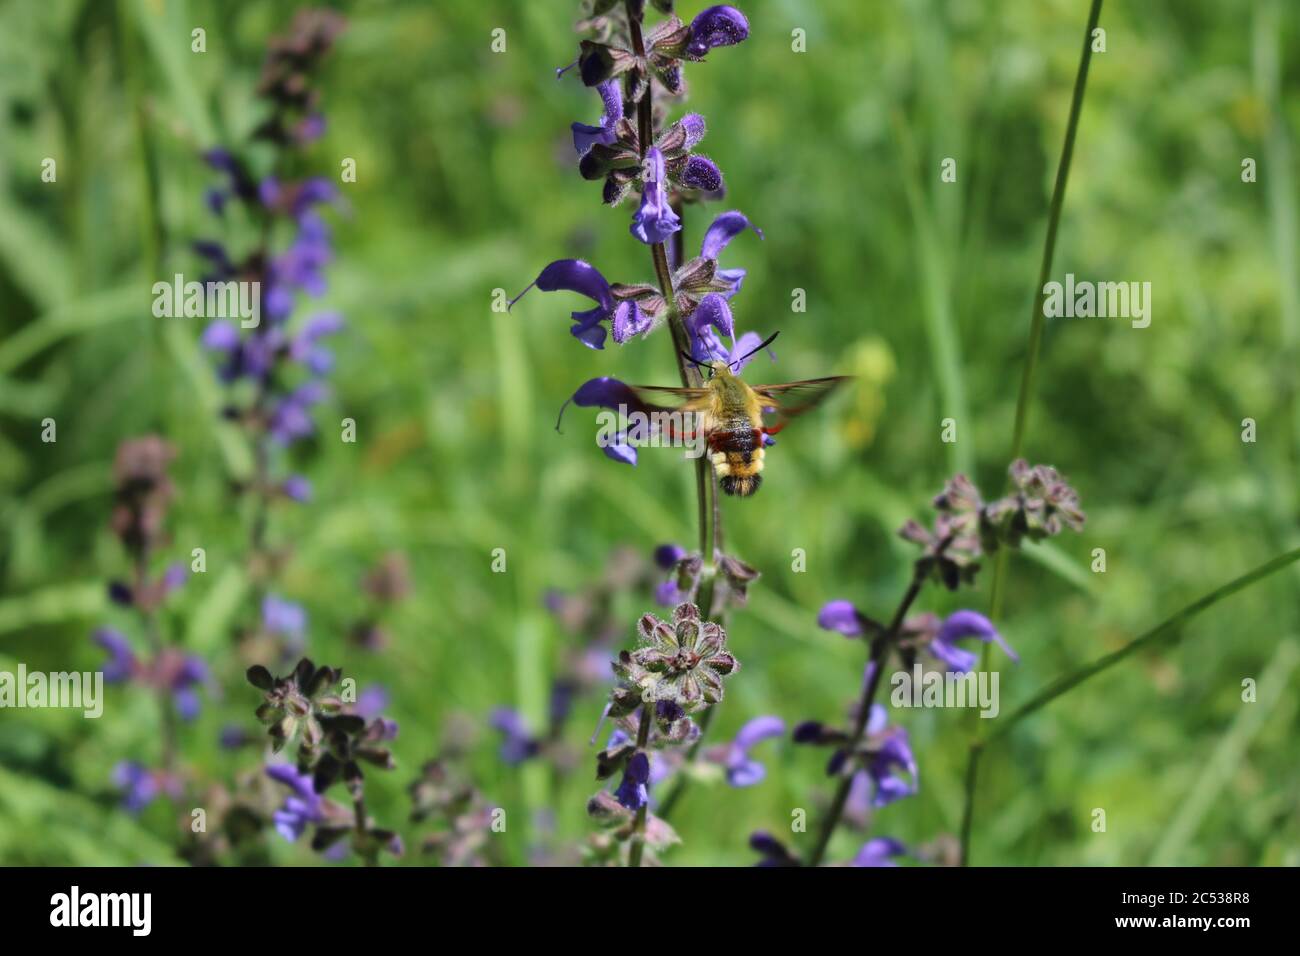 Eine Kolibri-Motte schwebt und nimmt Nektar aus einer purpurnen Blume in den französischen Alpen Stockfoto